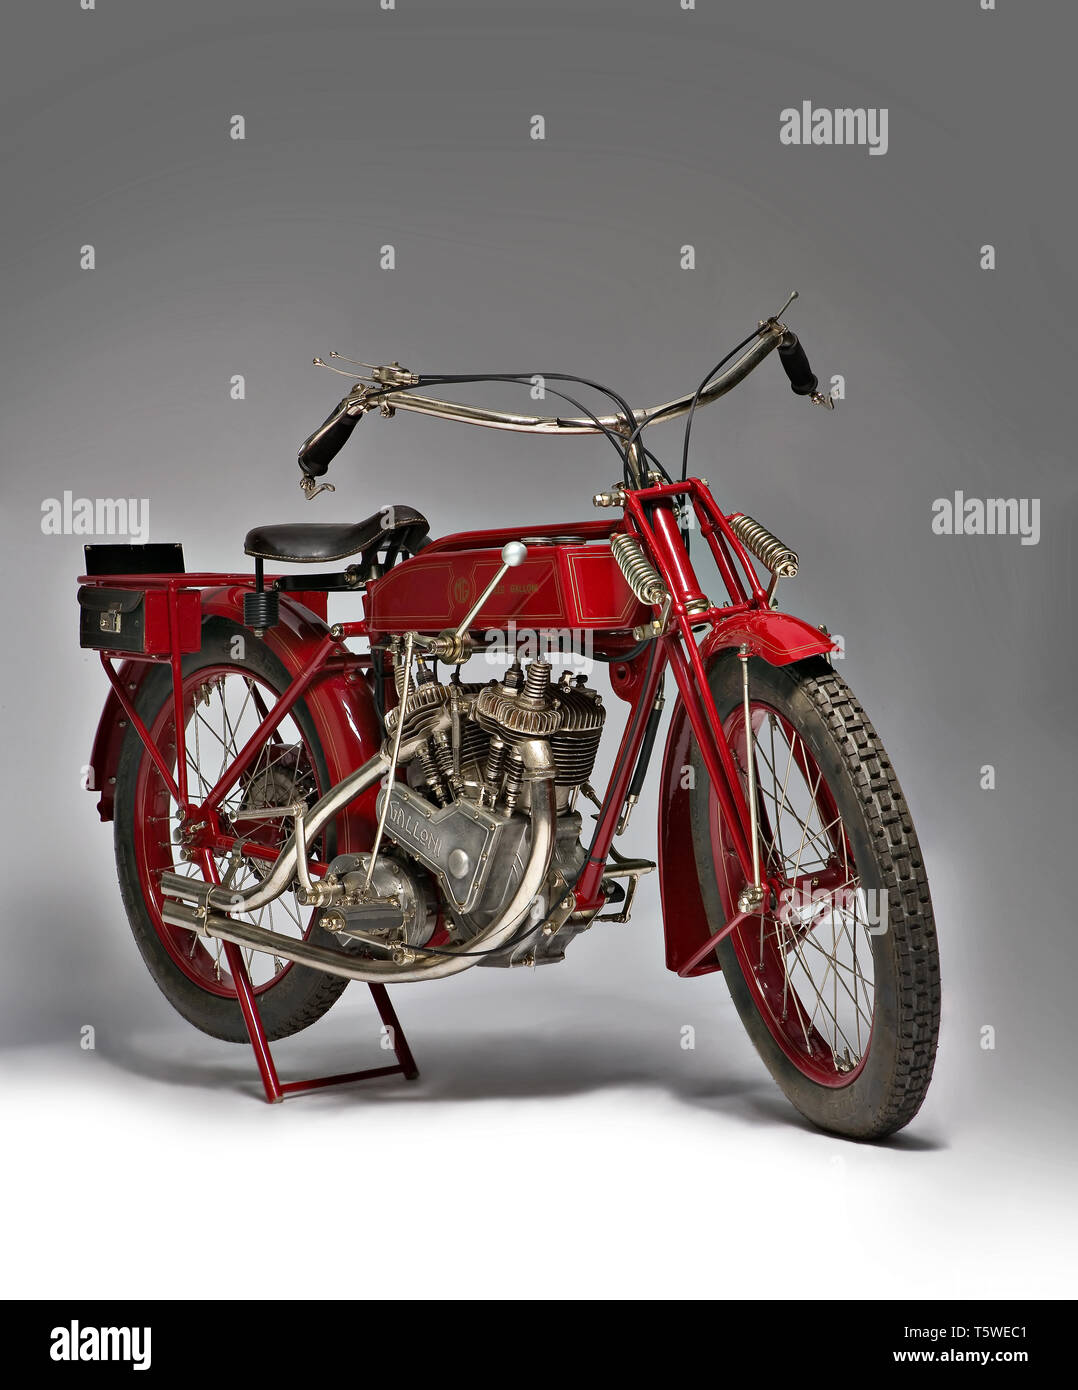 Moto d'epoca Galloni 750SS fabbrica: MG-Moto Galloni modello: 750SS fabbricata in: Italia - Borgomanero anno di costruzione: 1920-21 Stockfoto